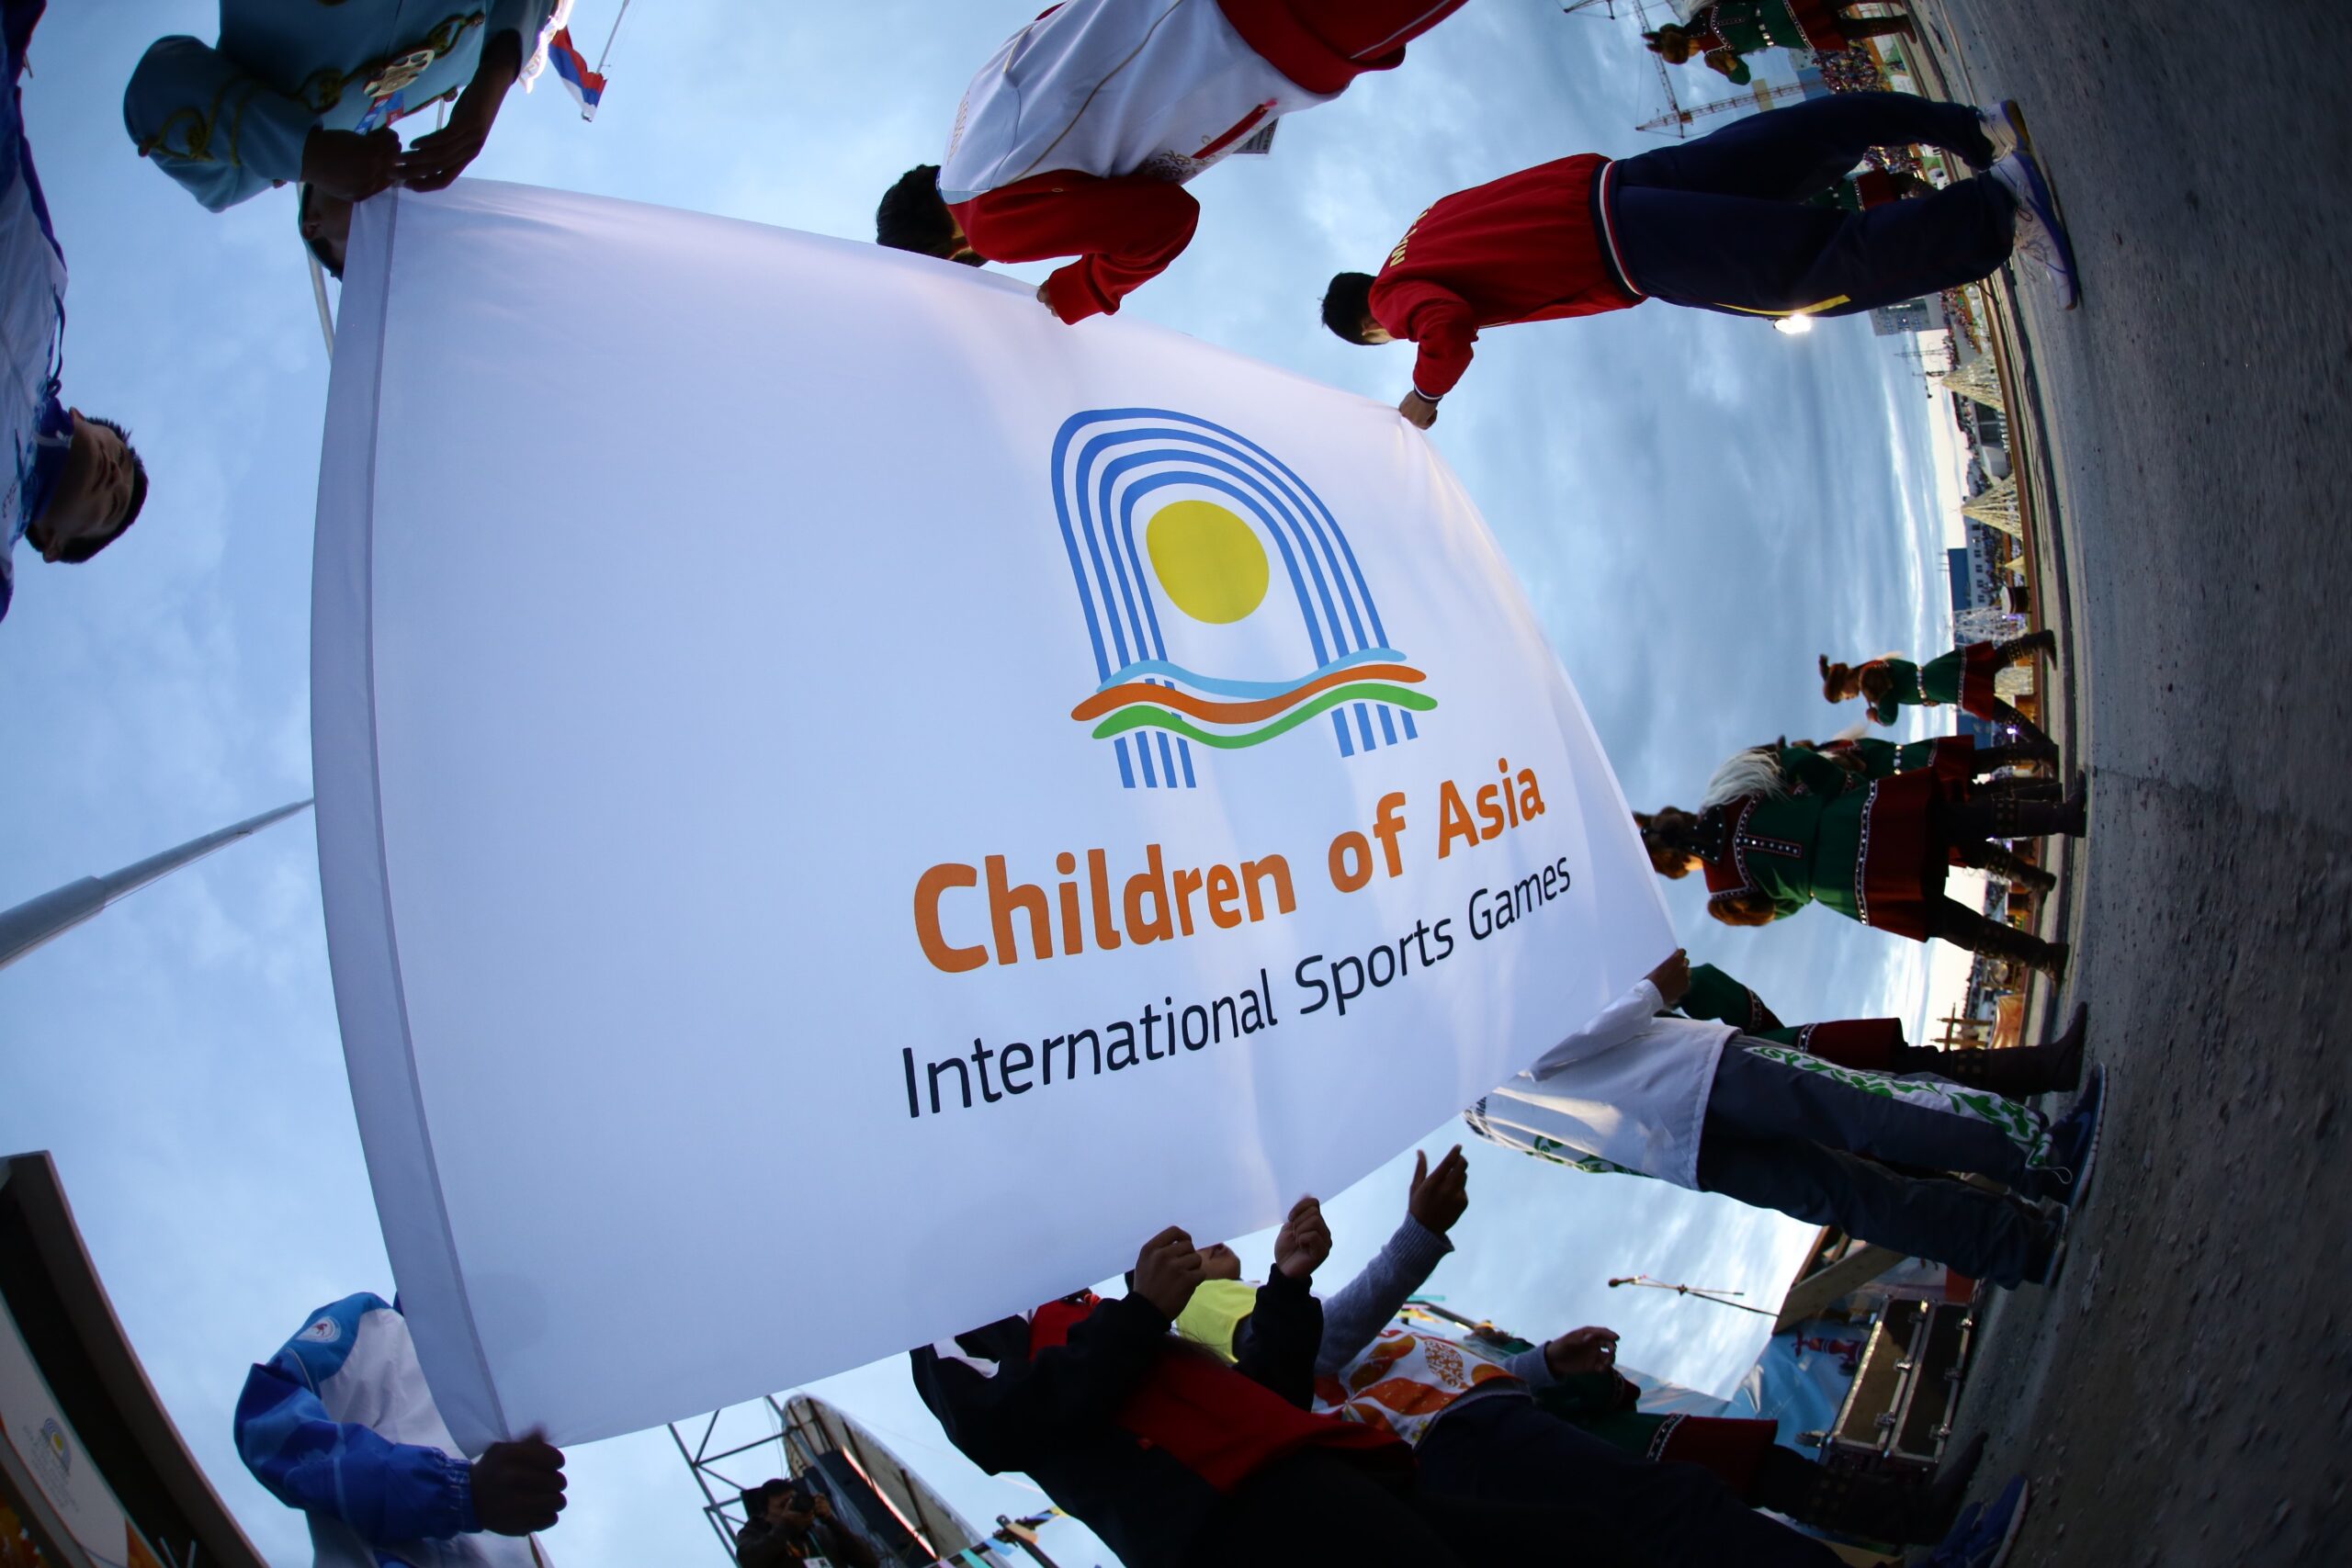 МОК подтвердил предоставление патроната VII Международным спортивным играм «Дети Азии»